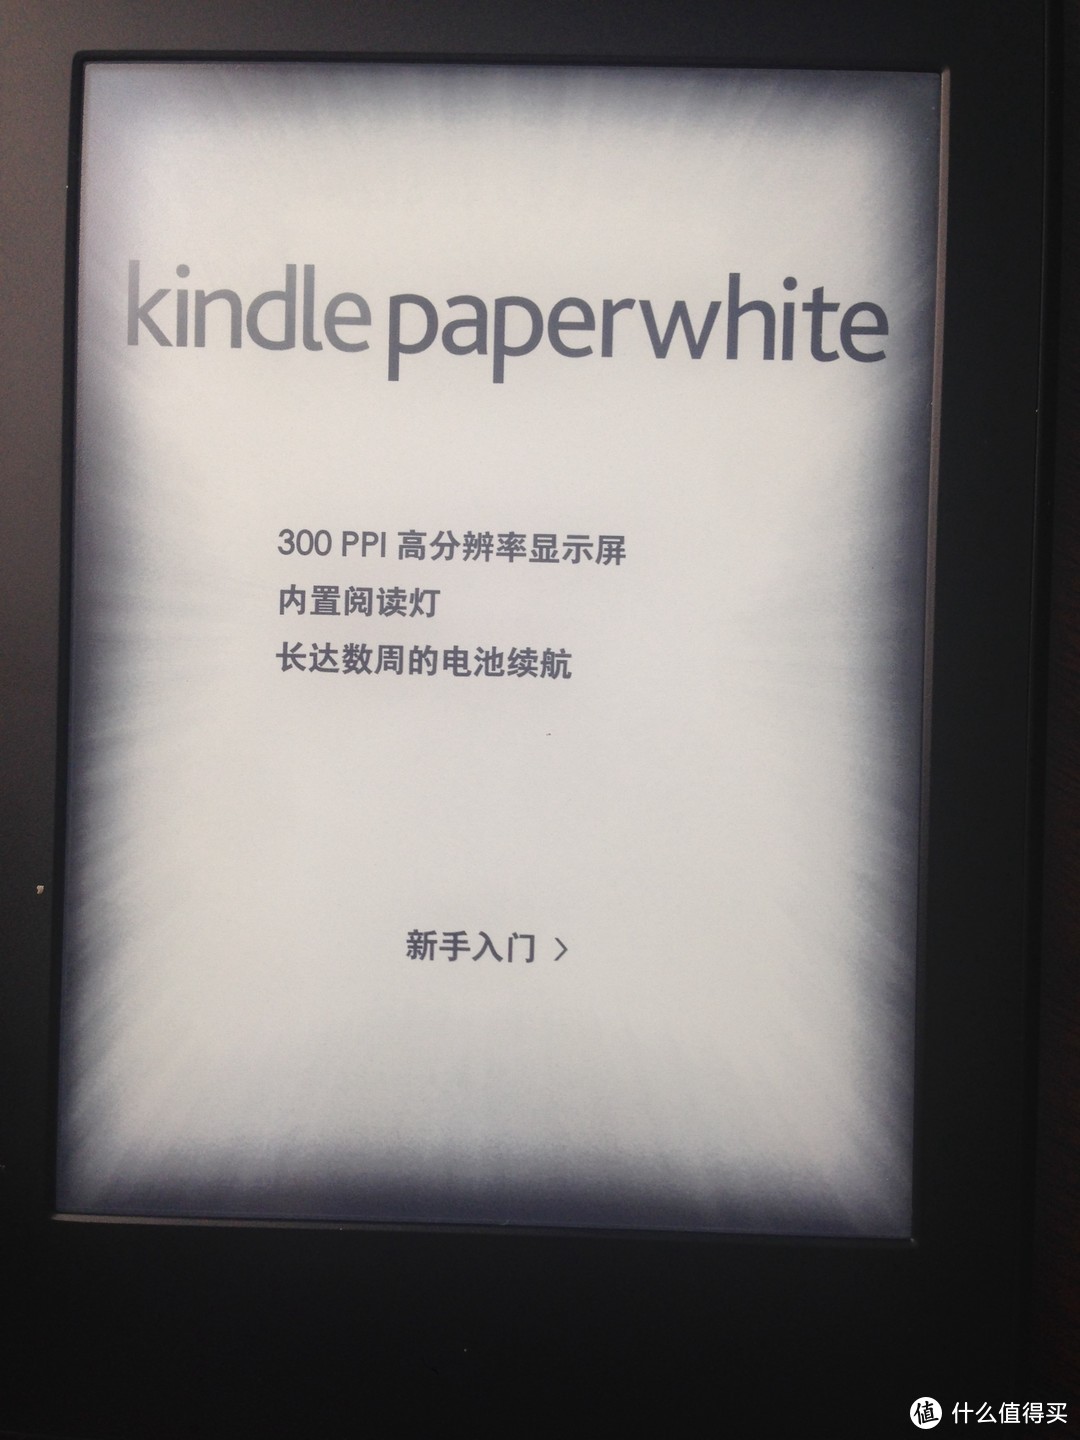 征文中奖AMAZON Kindle Paperwhite 电子书阅读器 开箱及一点参加征文小经验